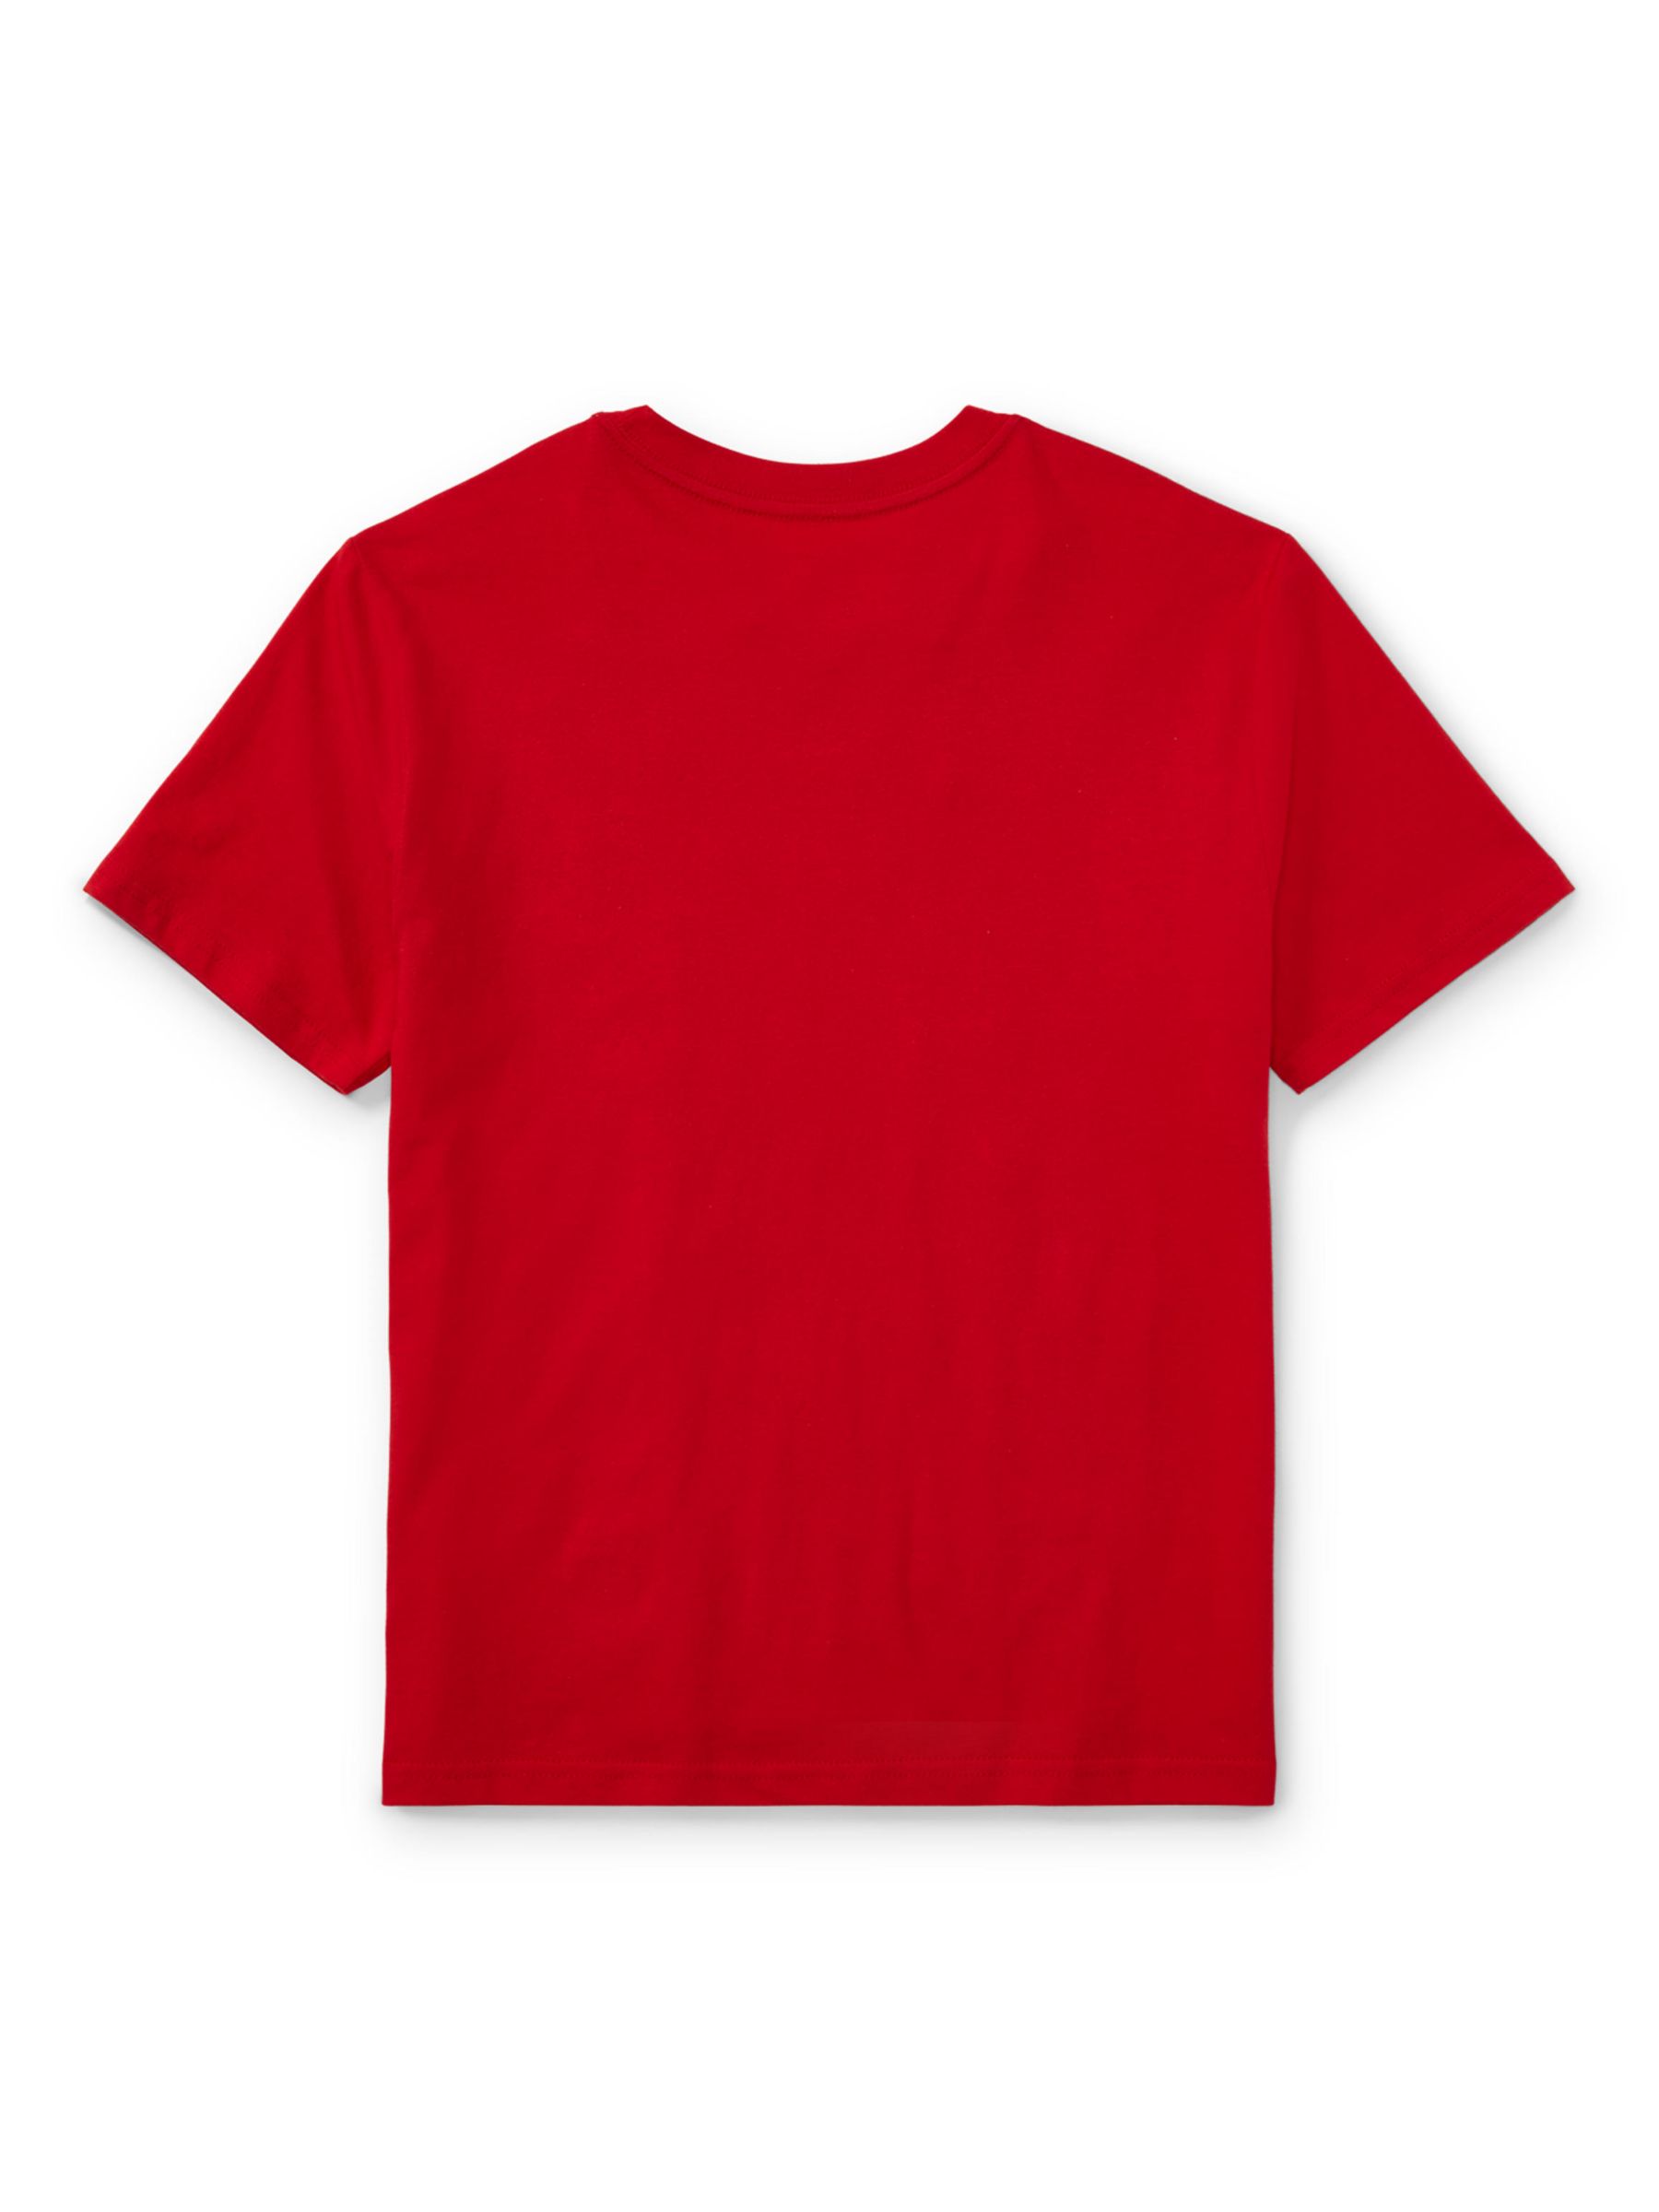 Ralph Lauren Kids' Cotton Signature Logo Short Sleeve T-Shirt, Red, M